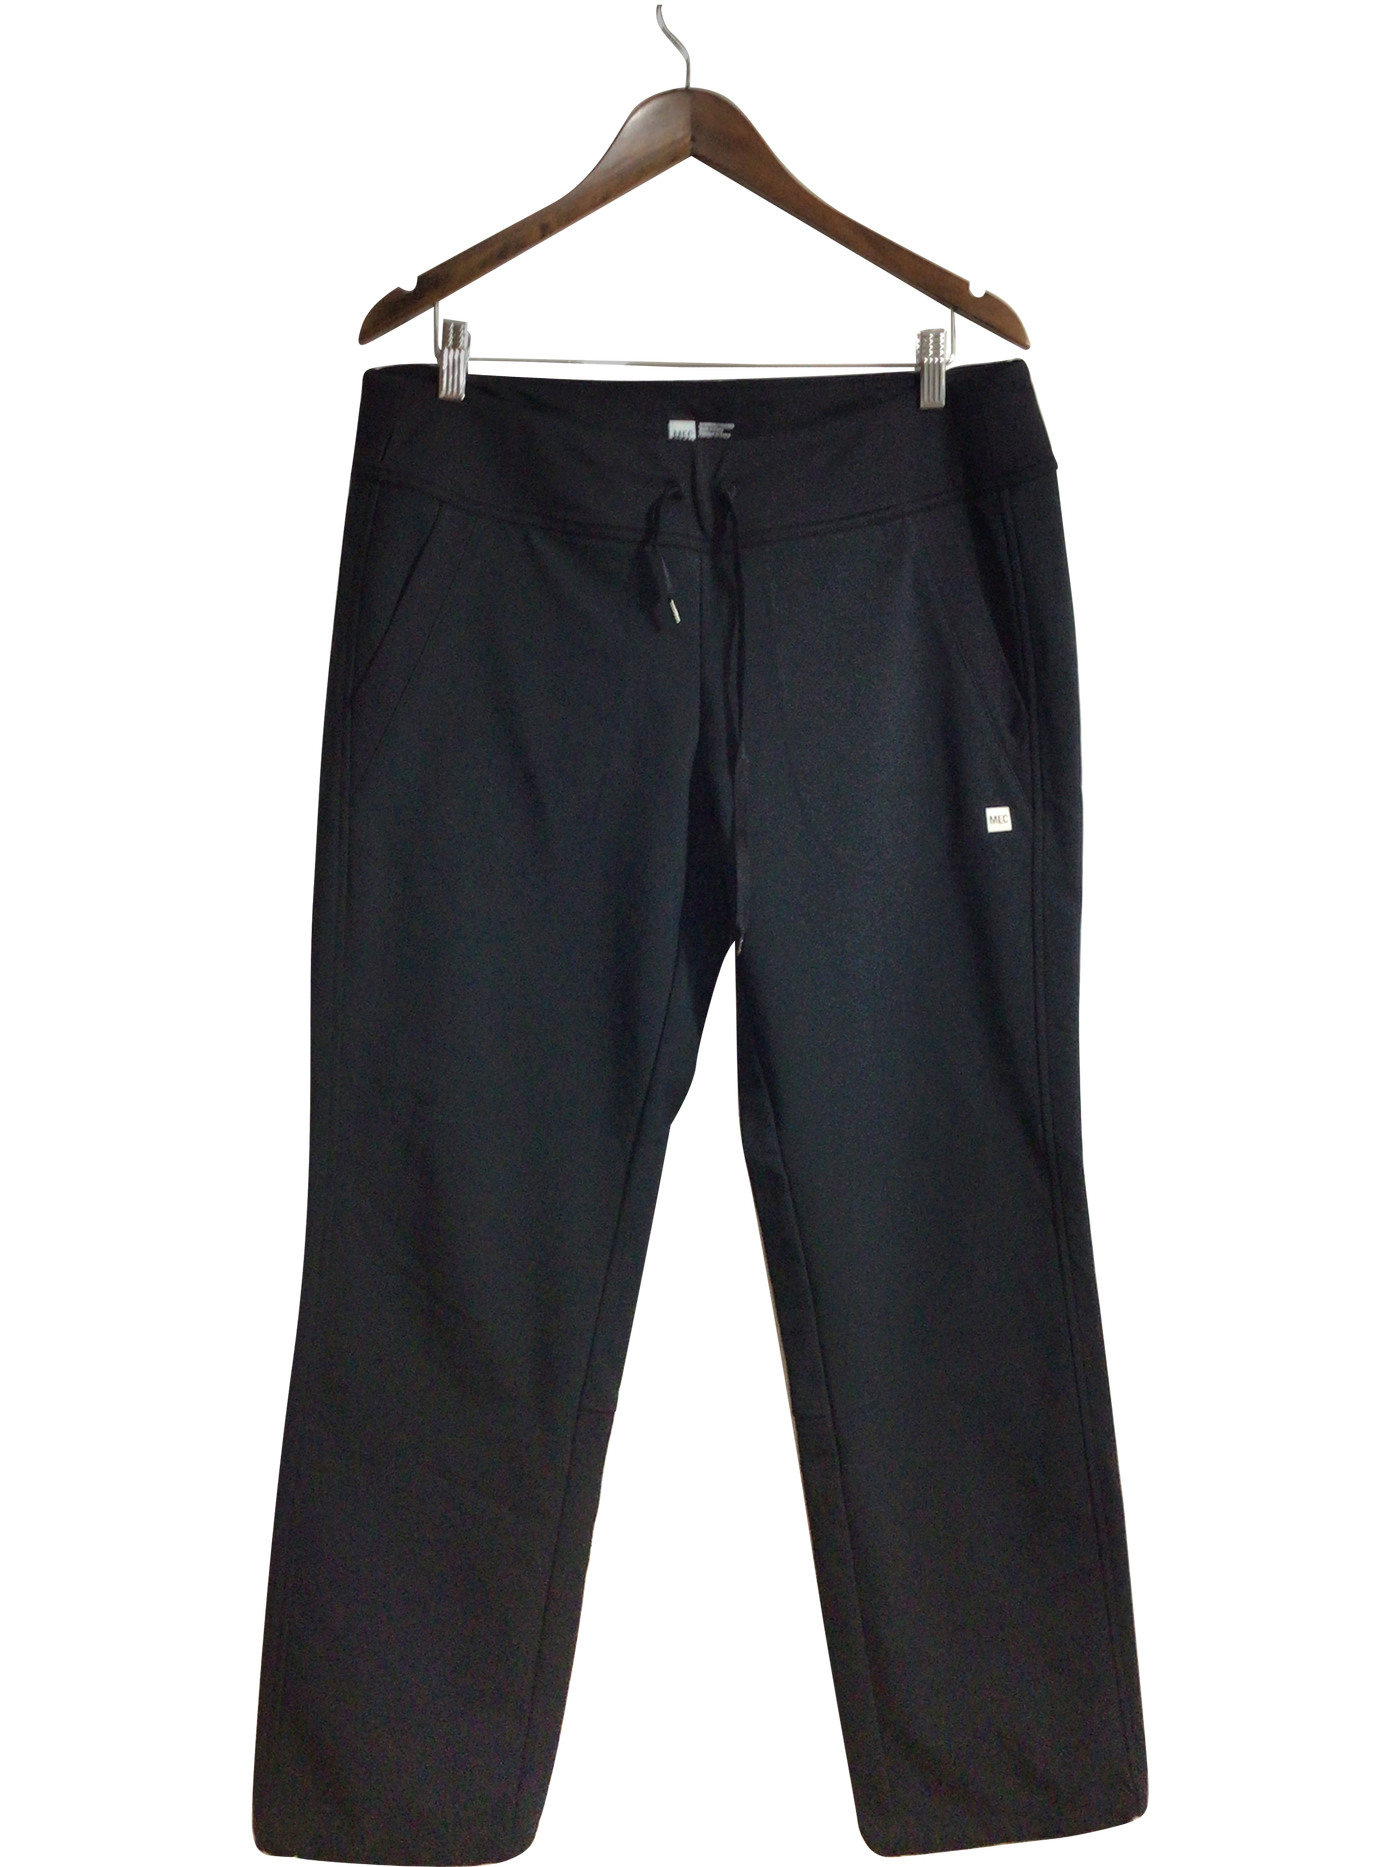 RBX Black Active Pants Size L - 72% off